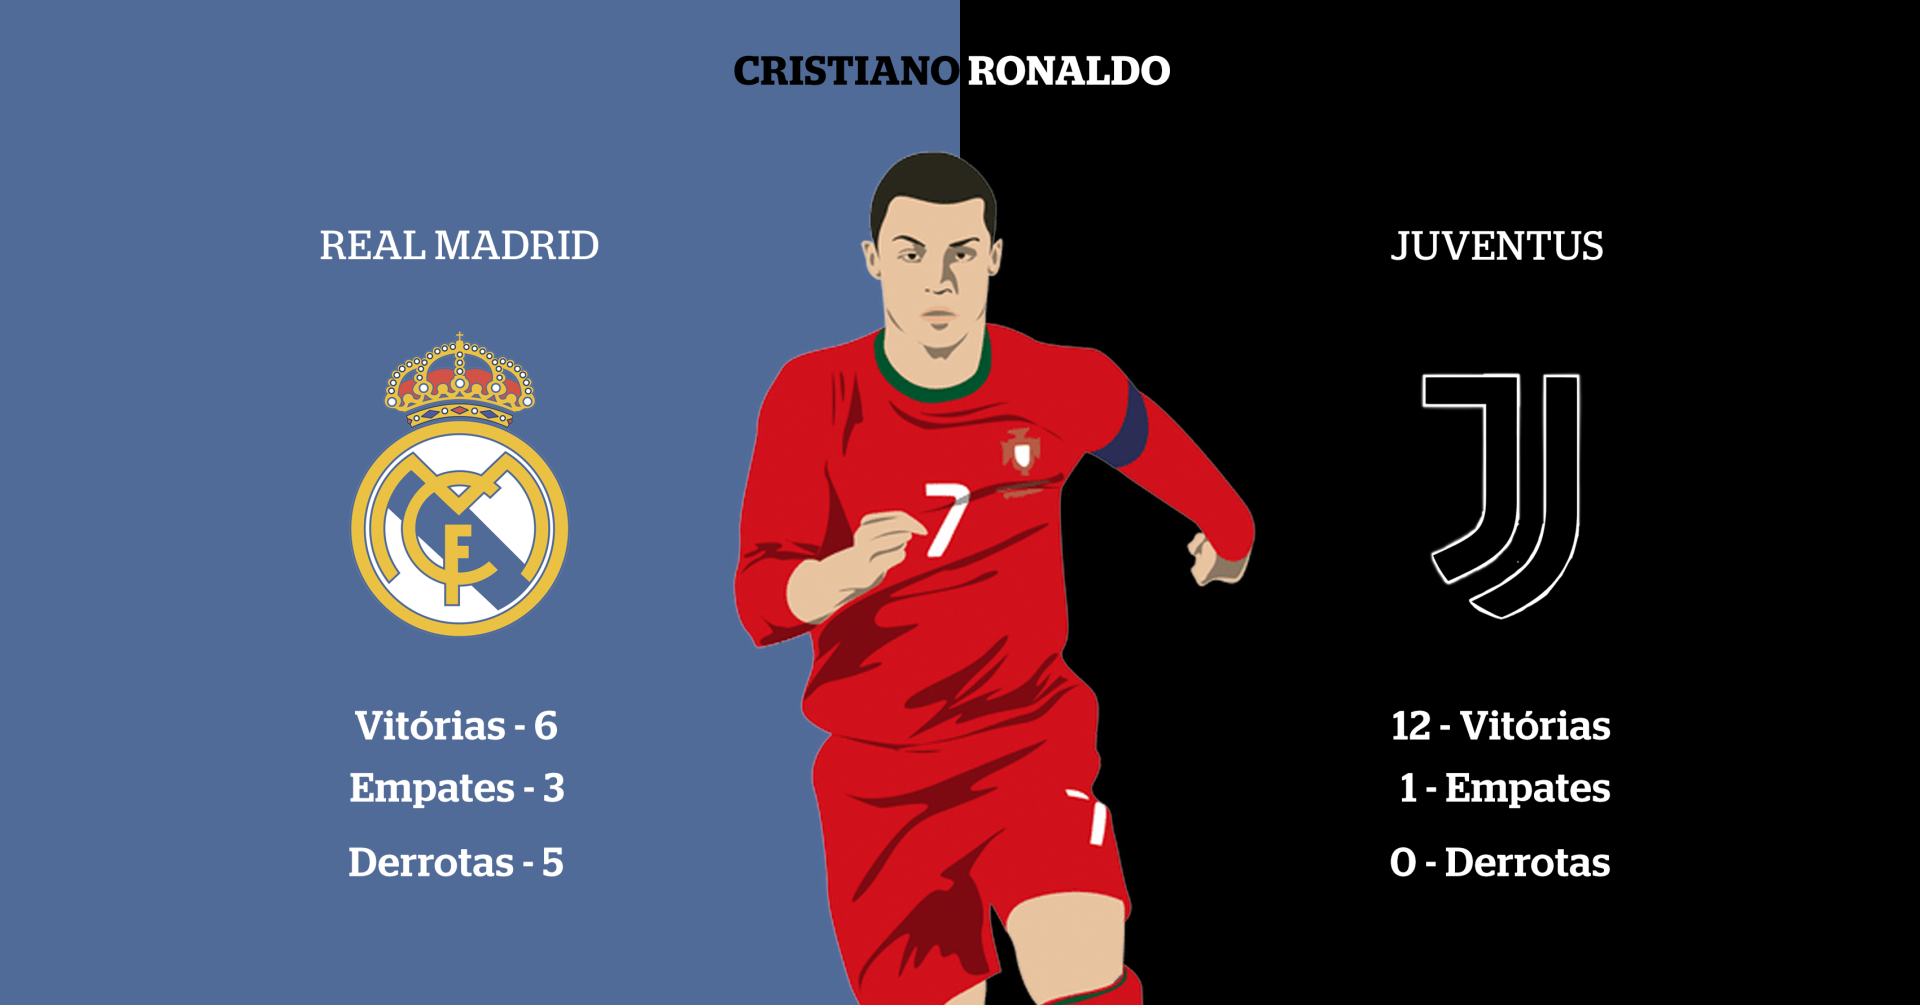 Real Madrid sem Cristiano Ronaldo: Os números não enganam